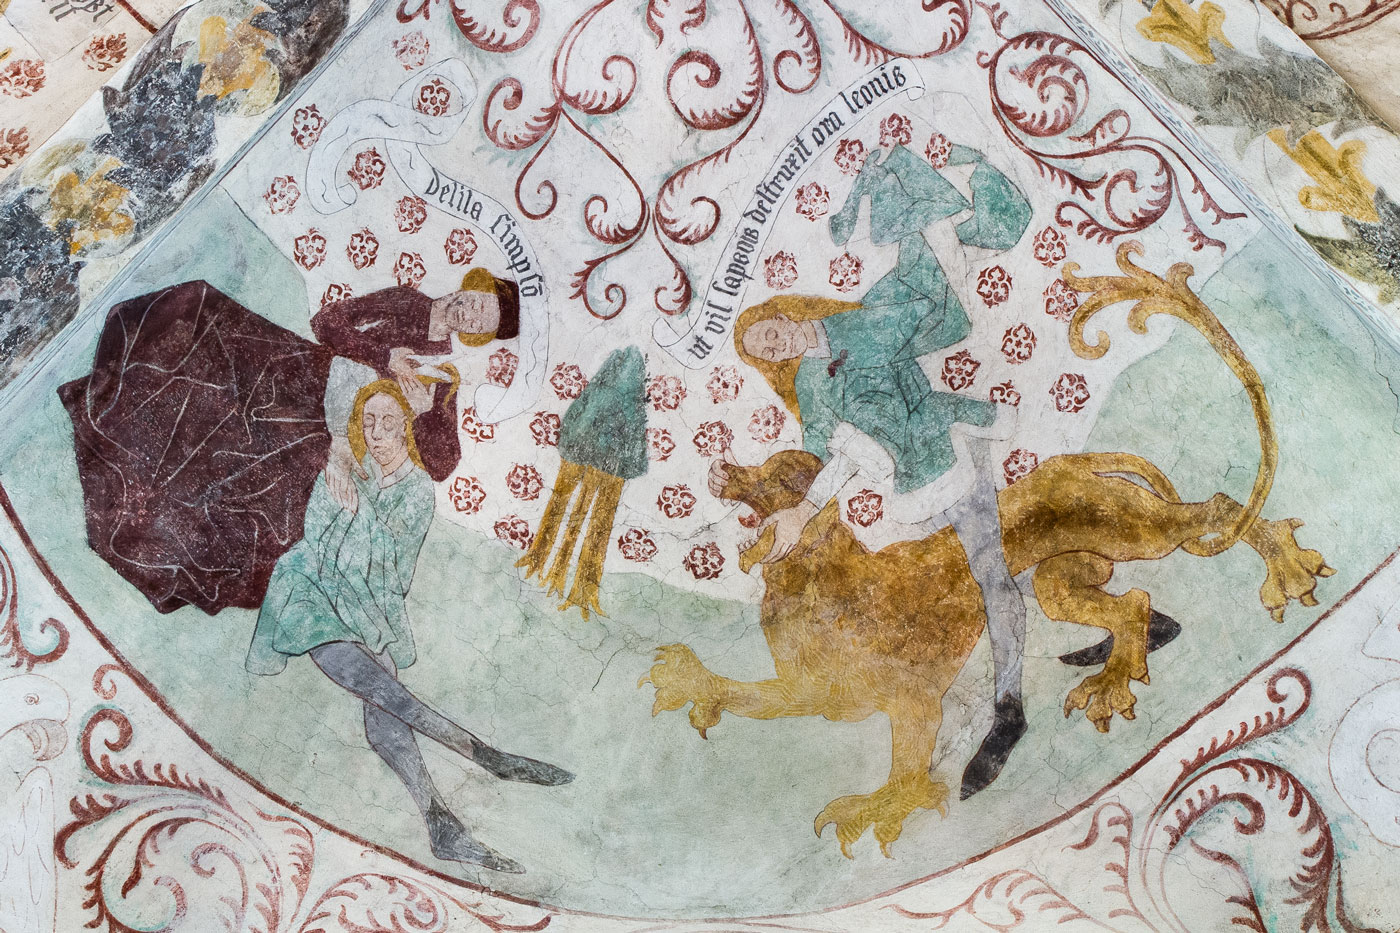 Simson får håret klippt av Delila; Simson bänder isär lejonets käftar - Vänge kyrka